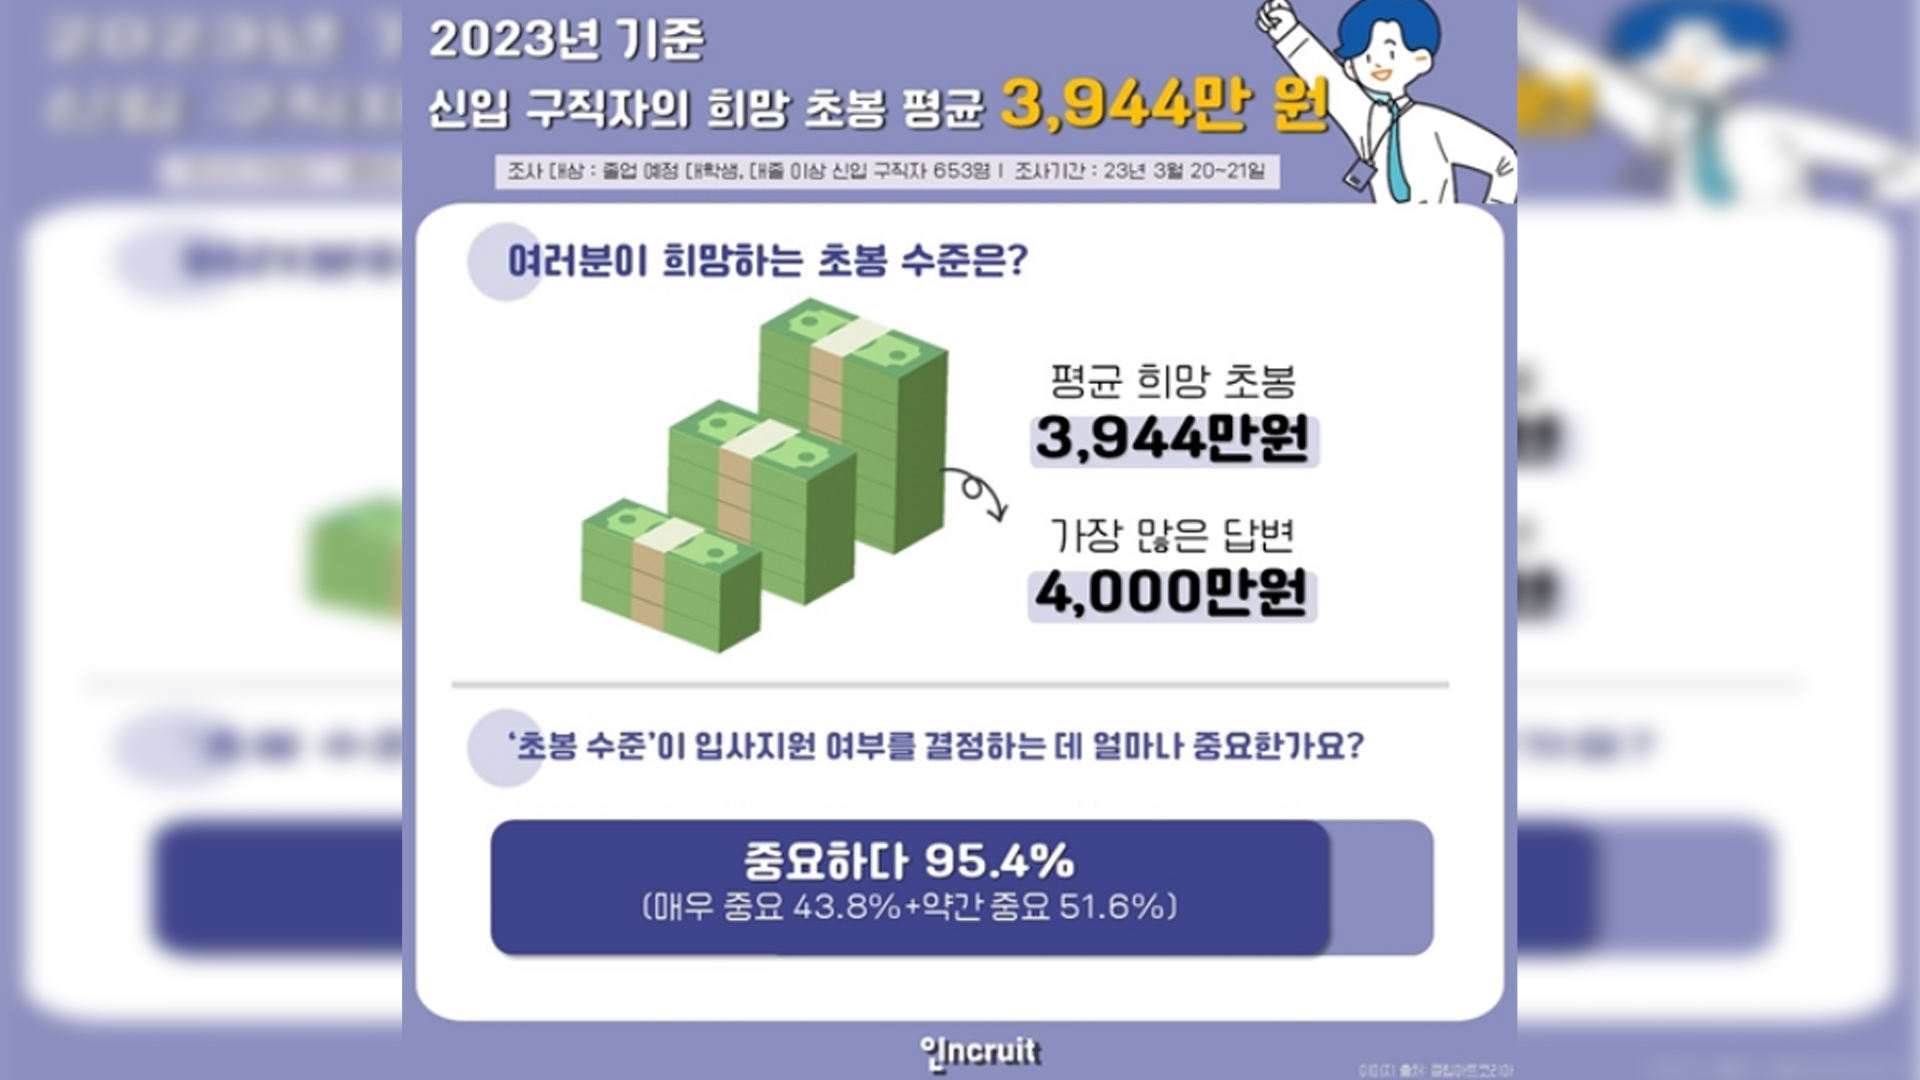 신입 구직자 희망 초봉 '평균 3944만 원'..